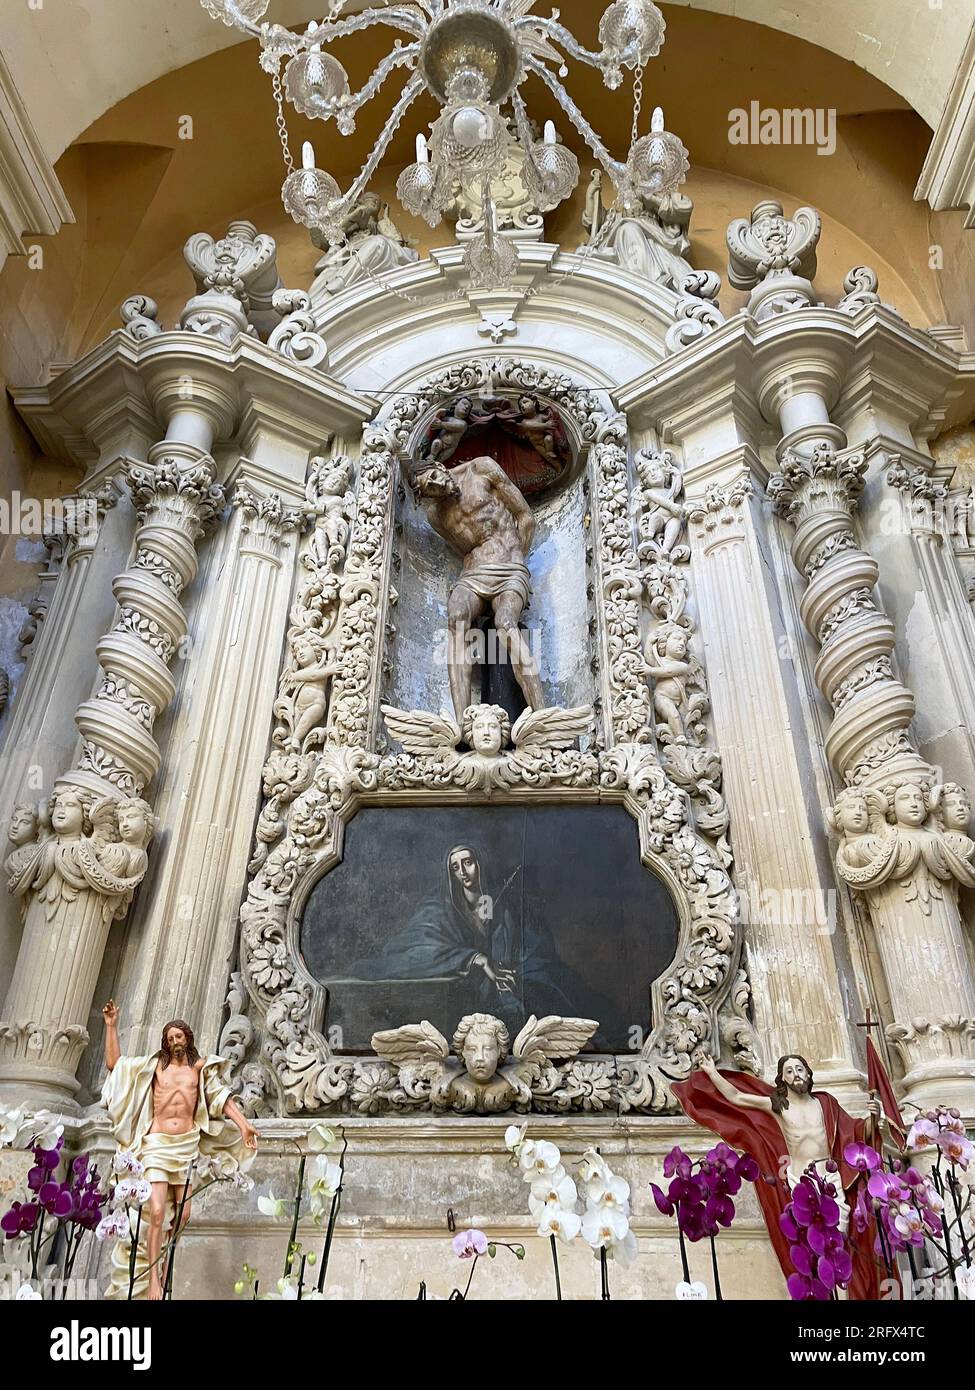 Lecce, Italia. All'interno della Chiesa di S.. Maria del Carmelo. Altare dedicato alla madre dolorosa, con una scultura di Cristo alla colonna. Foto Stock